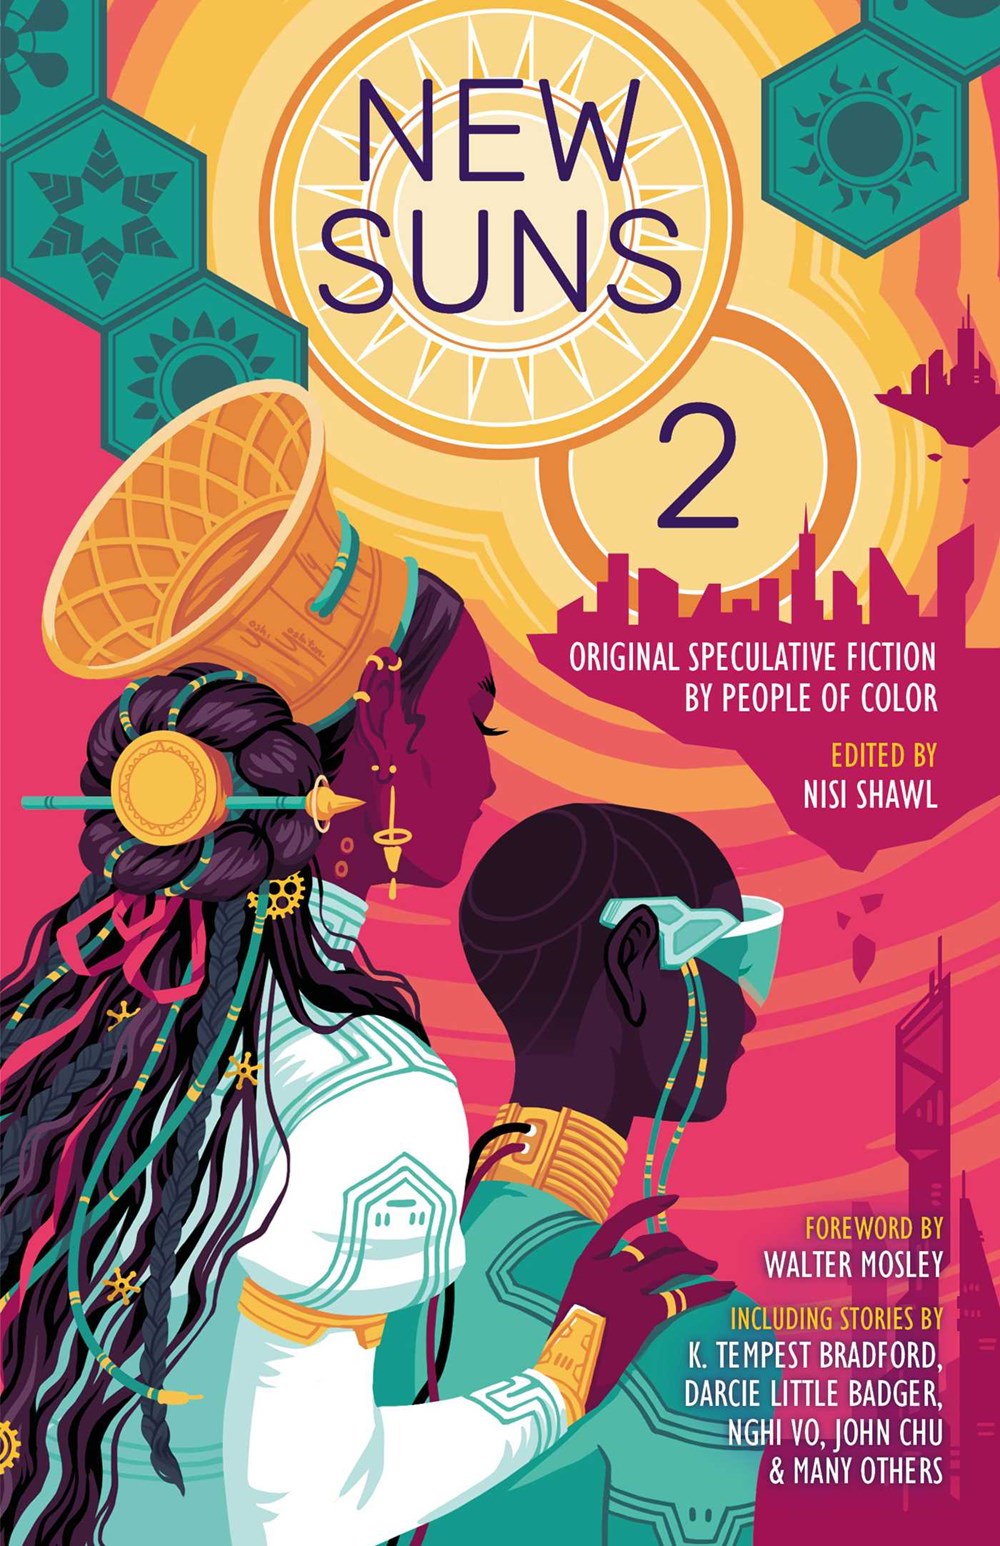 New Suns 2: Original Speculative Fiction